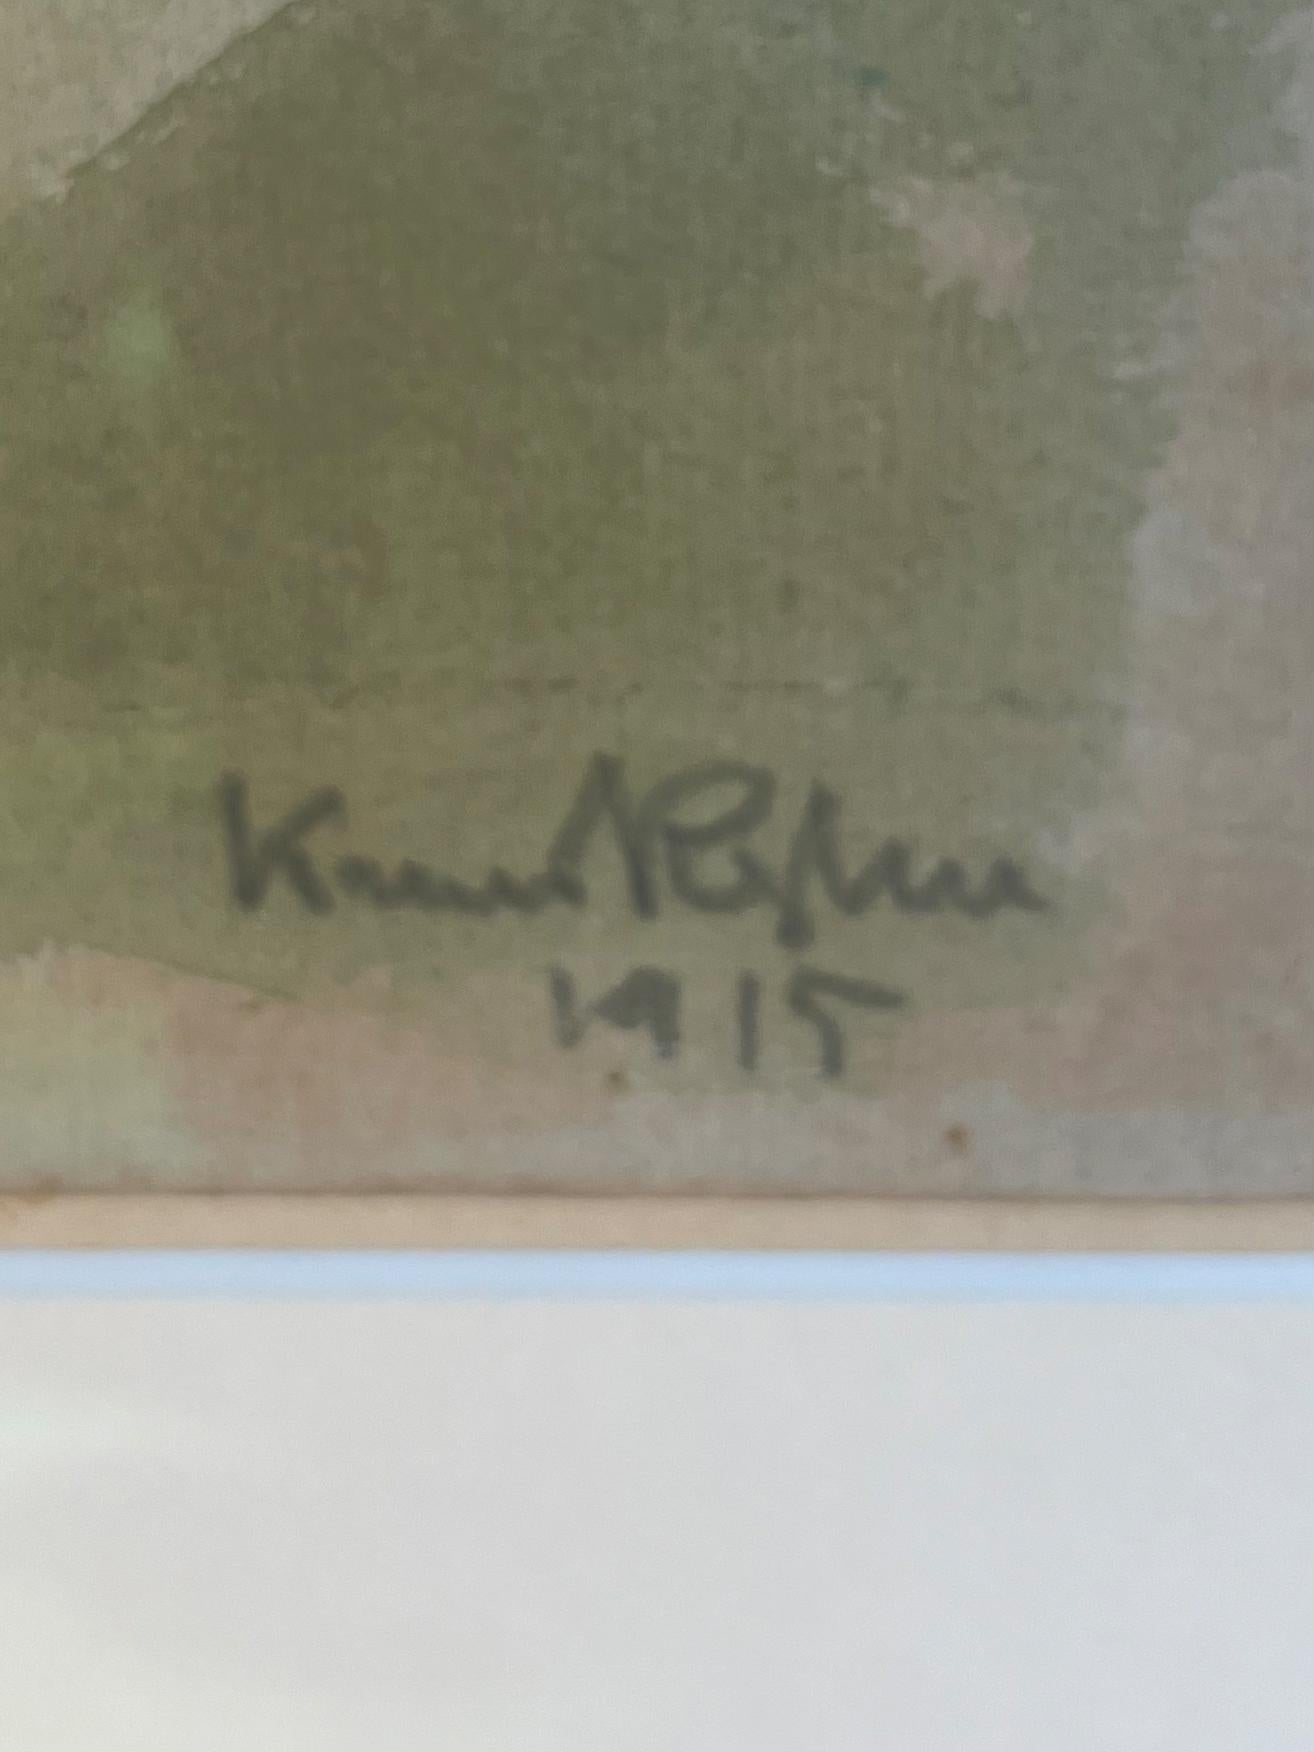 Composition de Knud Kyhn, 1915
Aquarelle sur papier. Format de la feuille 30×38 cm, signée et encadrée.

Knud Kyhn (1880 - 1969) était un peintre, illustrateur et sculpteur en céramique danois, particulièrement connu pour ses figurines d'animaux,